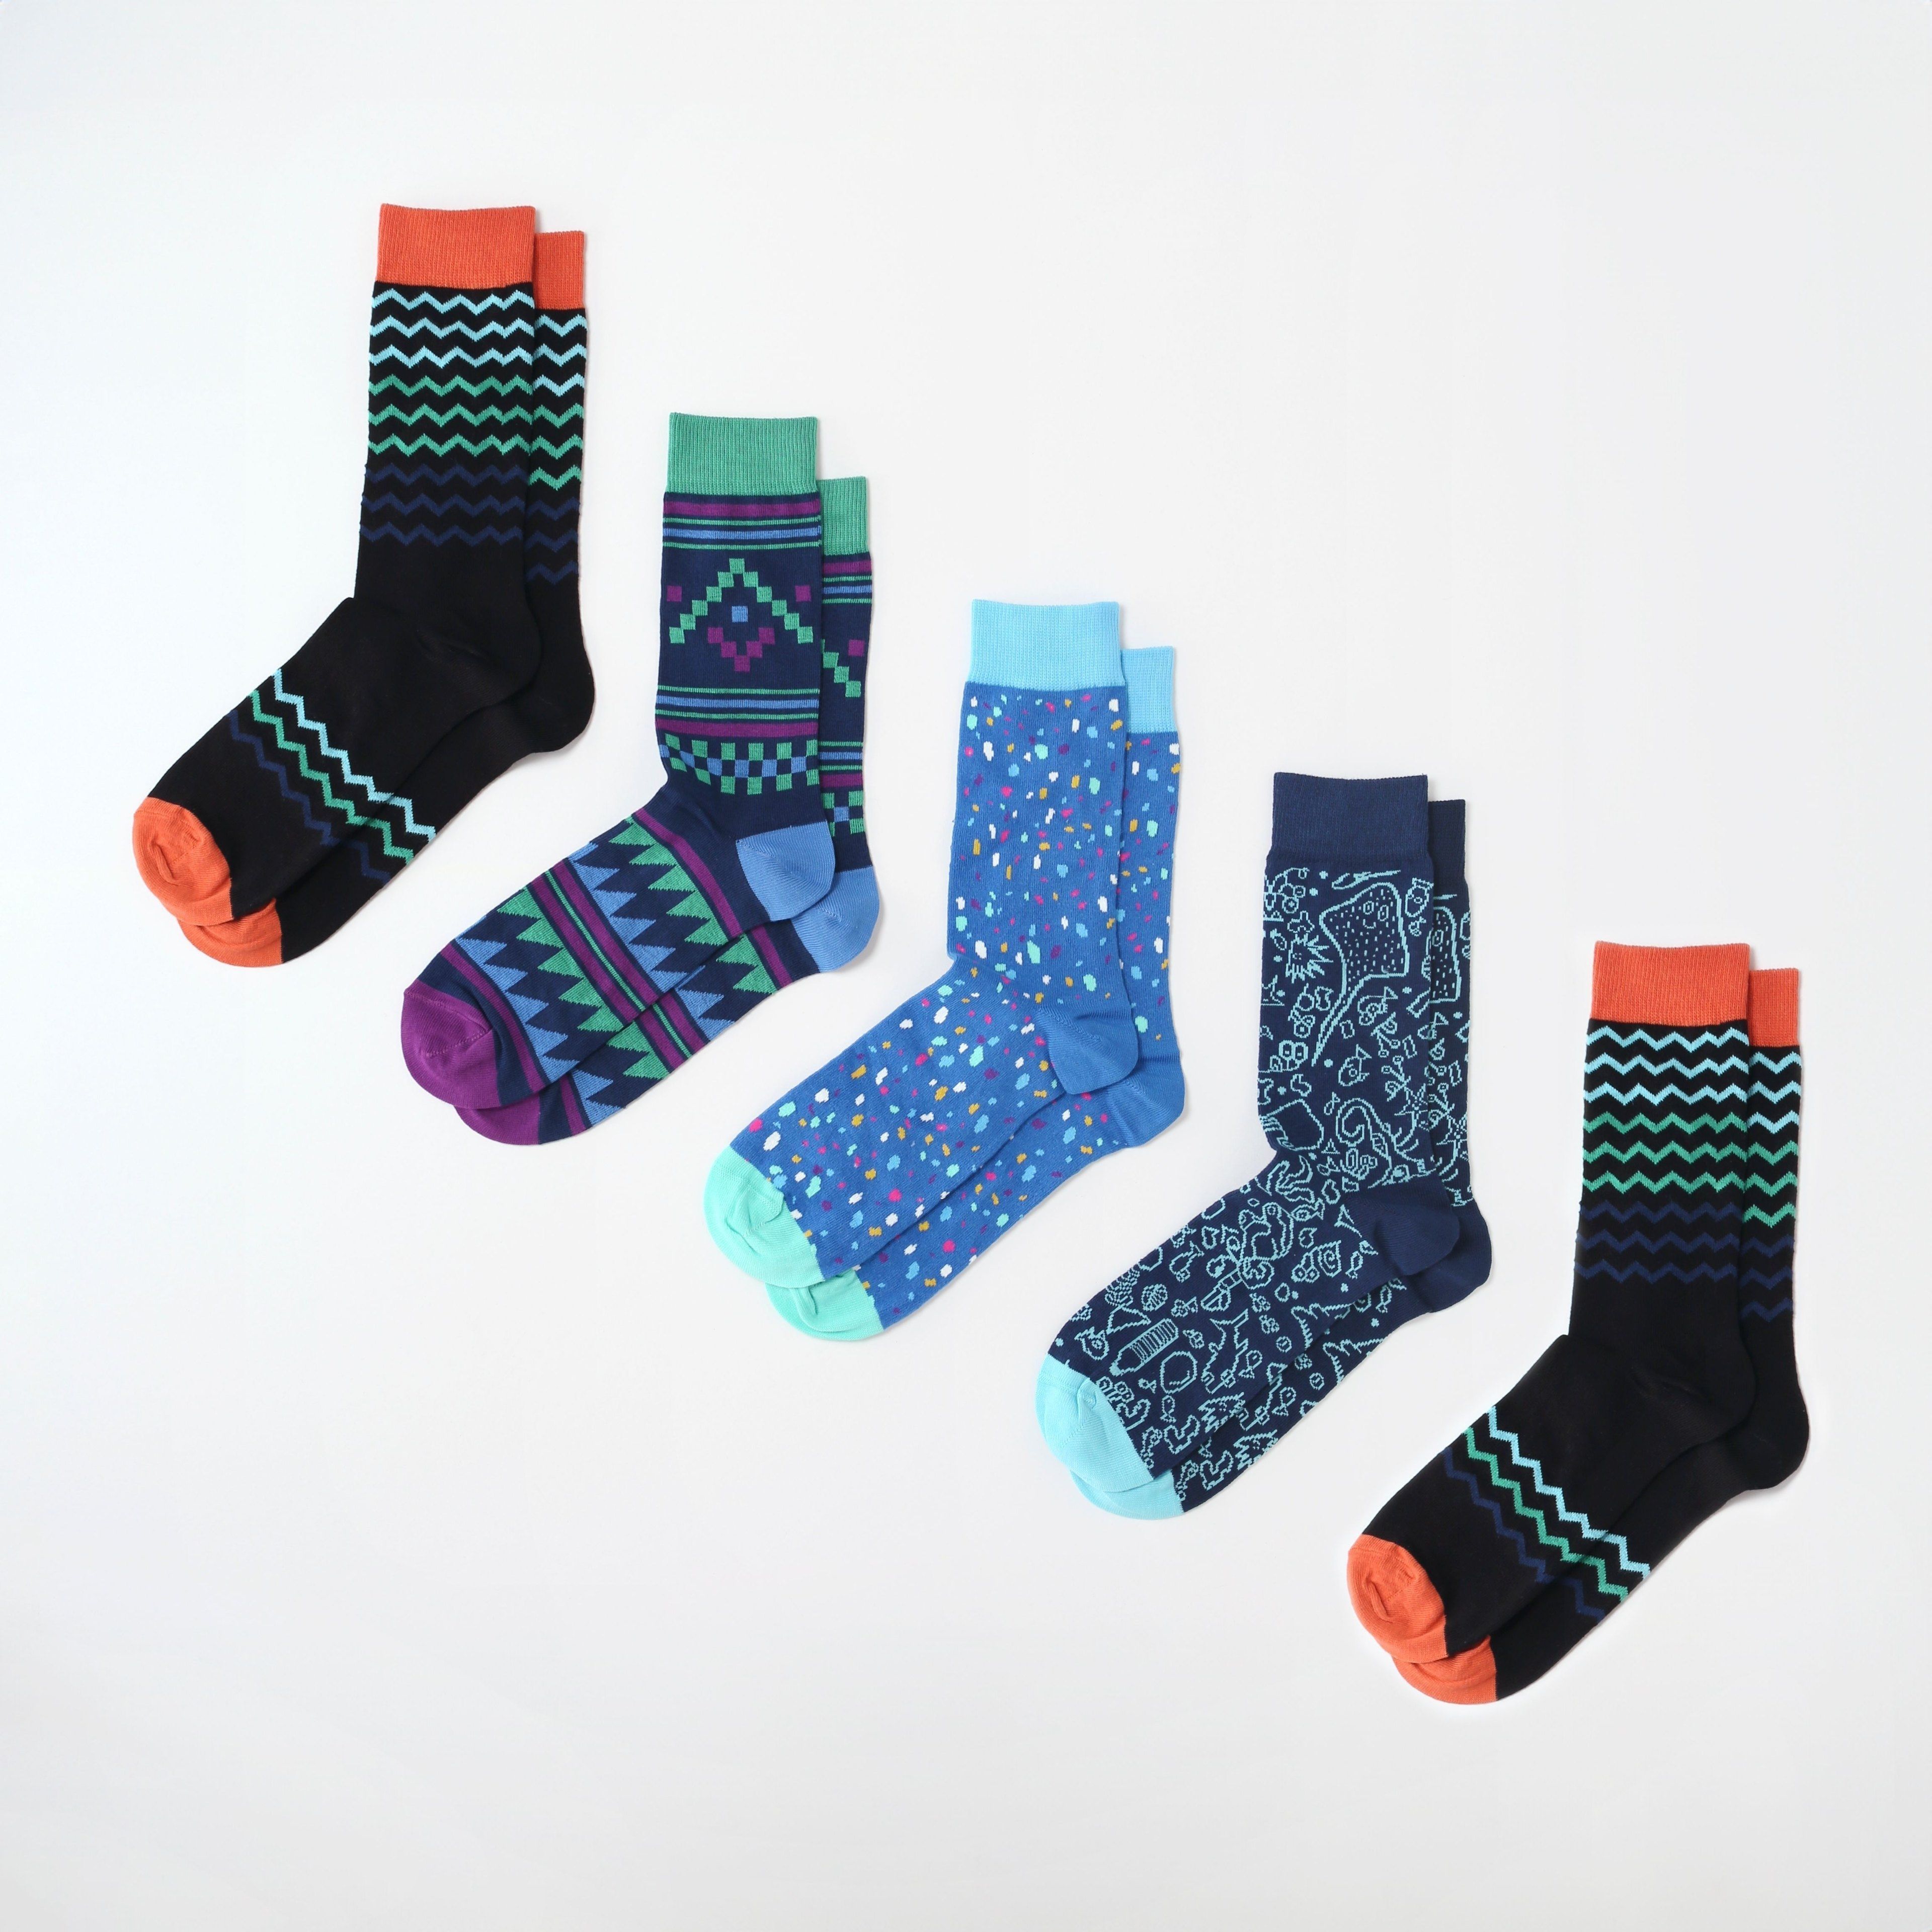 Men's Organic Cotton Socks - 5 Pack